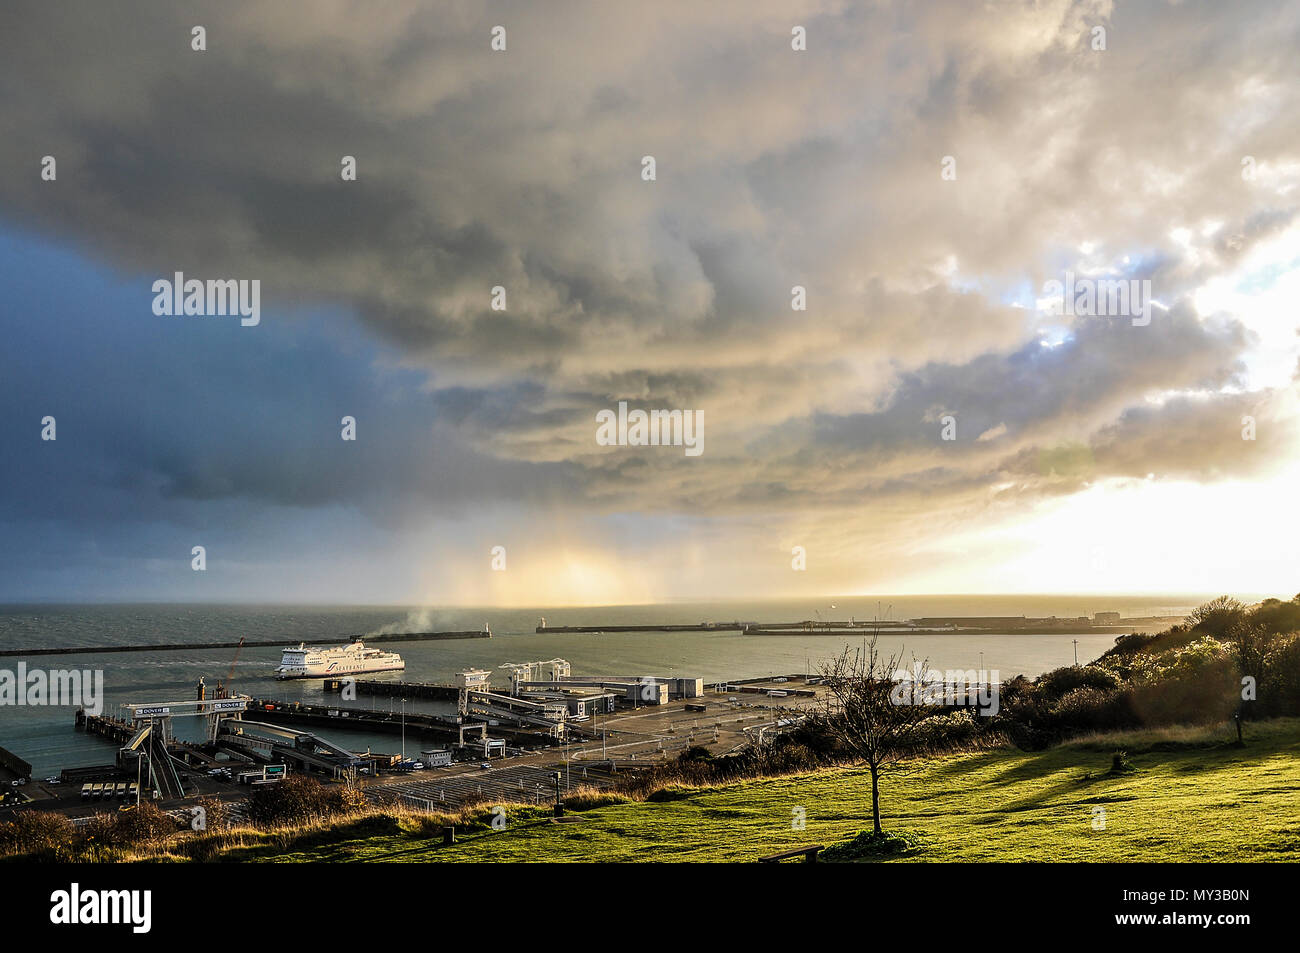 Schlechte Wetter über den Englischen Kanal und Hafen von Dover. Extreme Wetterbedingungen. Stürme. Regen. Es regnete. Dämmerung. Sonnenuntergang. Sea France Fähre Stockfoto